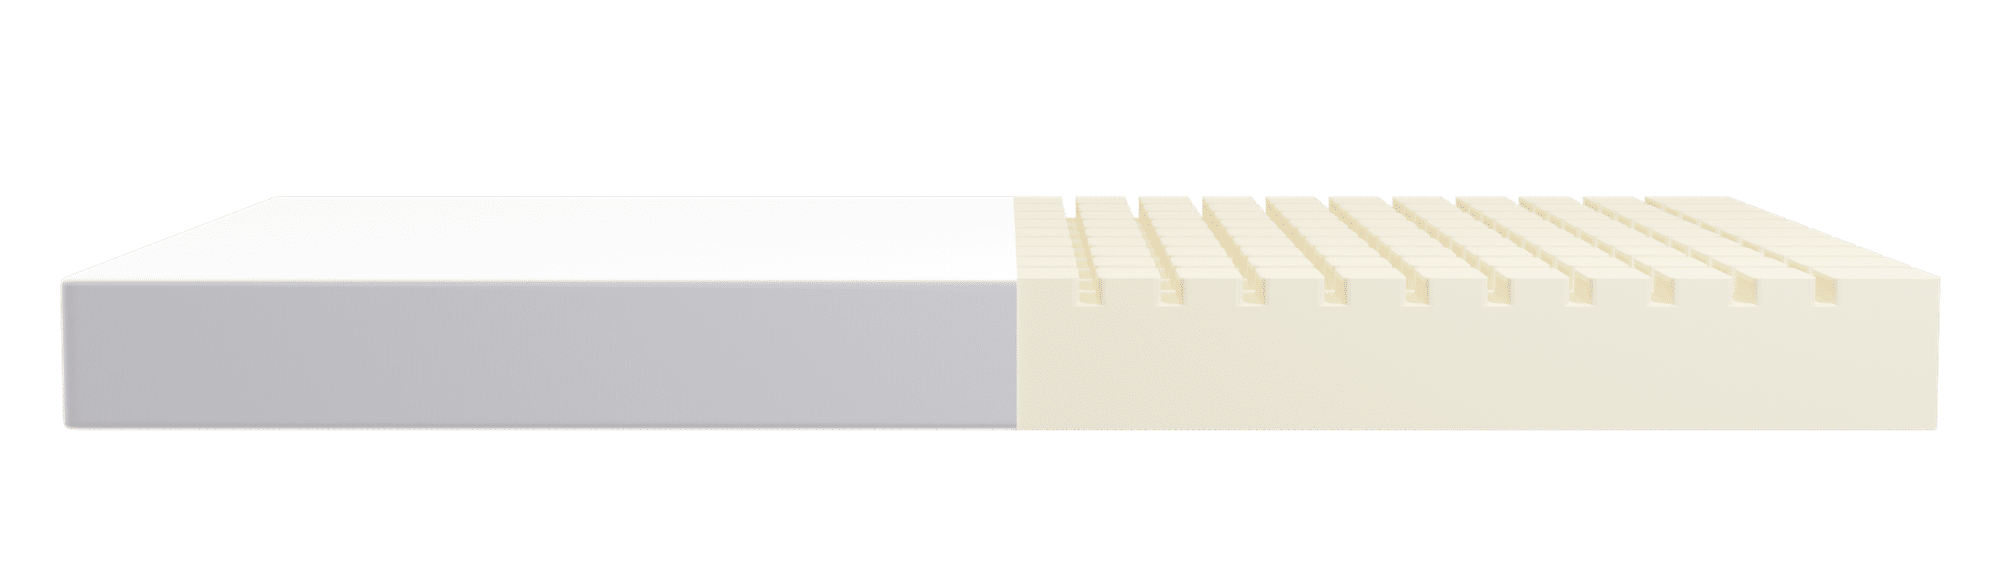 FLEXA Foam mattress with cotton cover 190x90